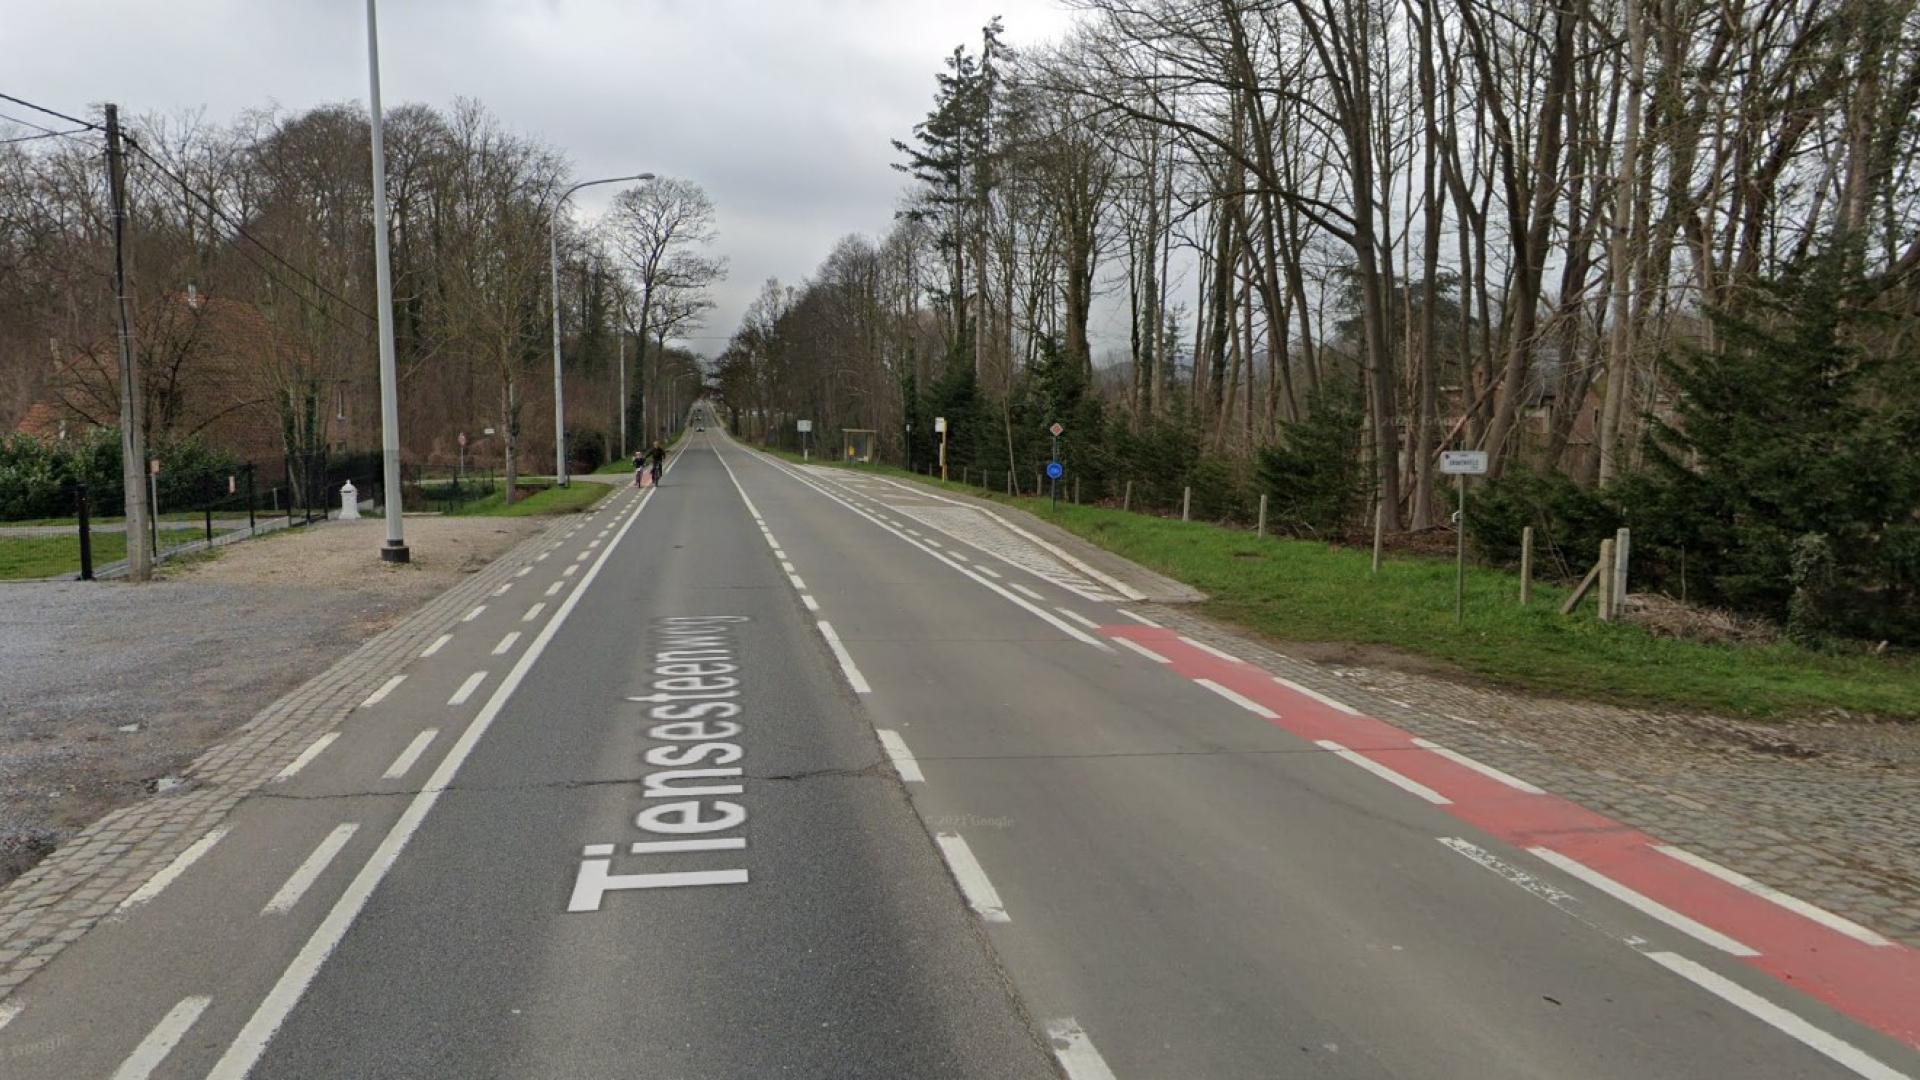 Verhogen verkeersveiligheid en toegankelijkheid bushaltes op kruispunten zoals hier op Gravenveldstraat en verderop de Kerselaarlaan